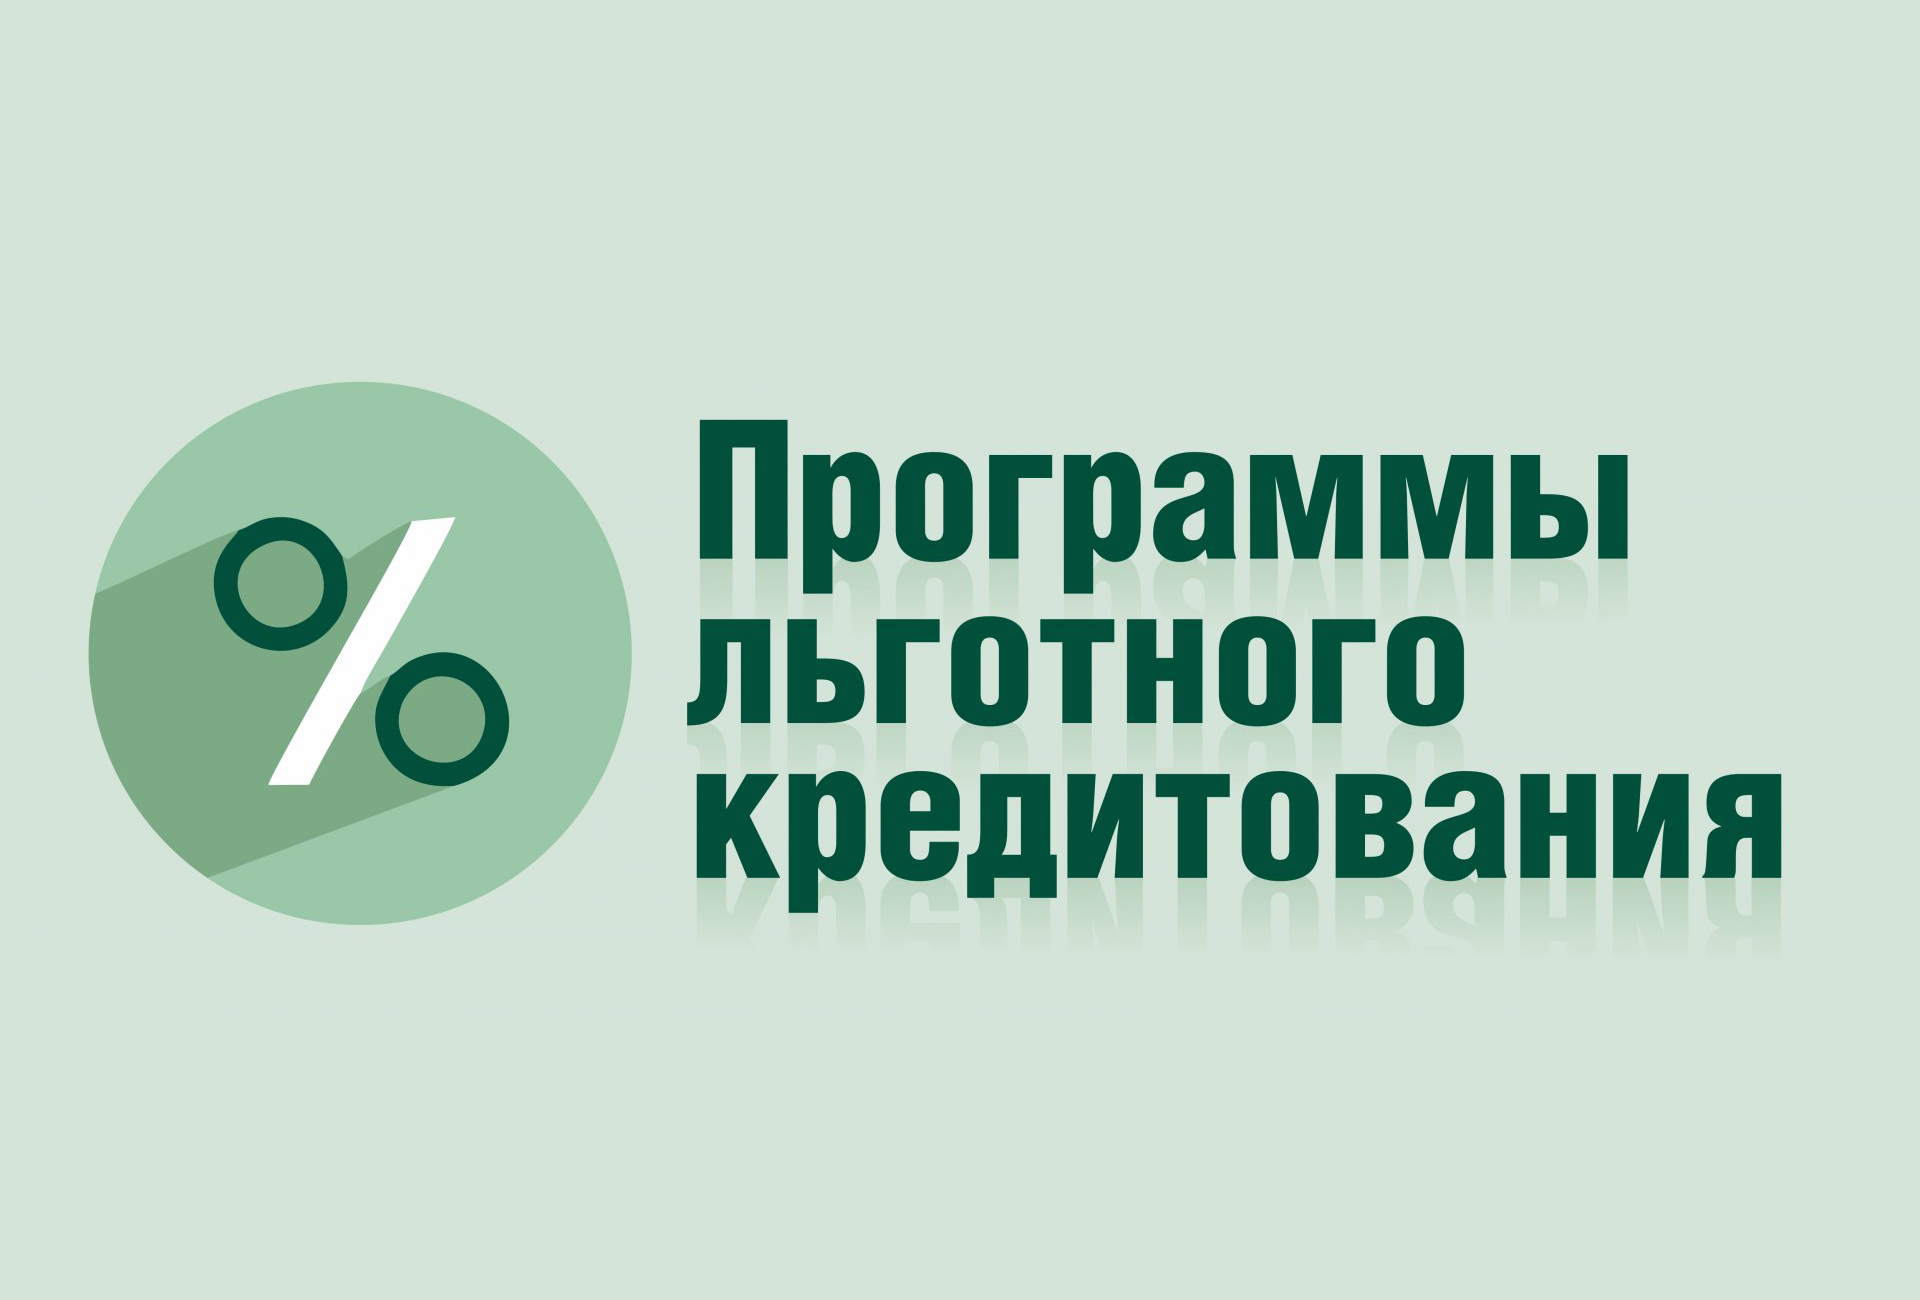 За 10 месяцев малый и средний бизнес получил более 90 млрд рублей льготных инвесткредитов.